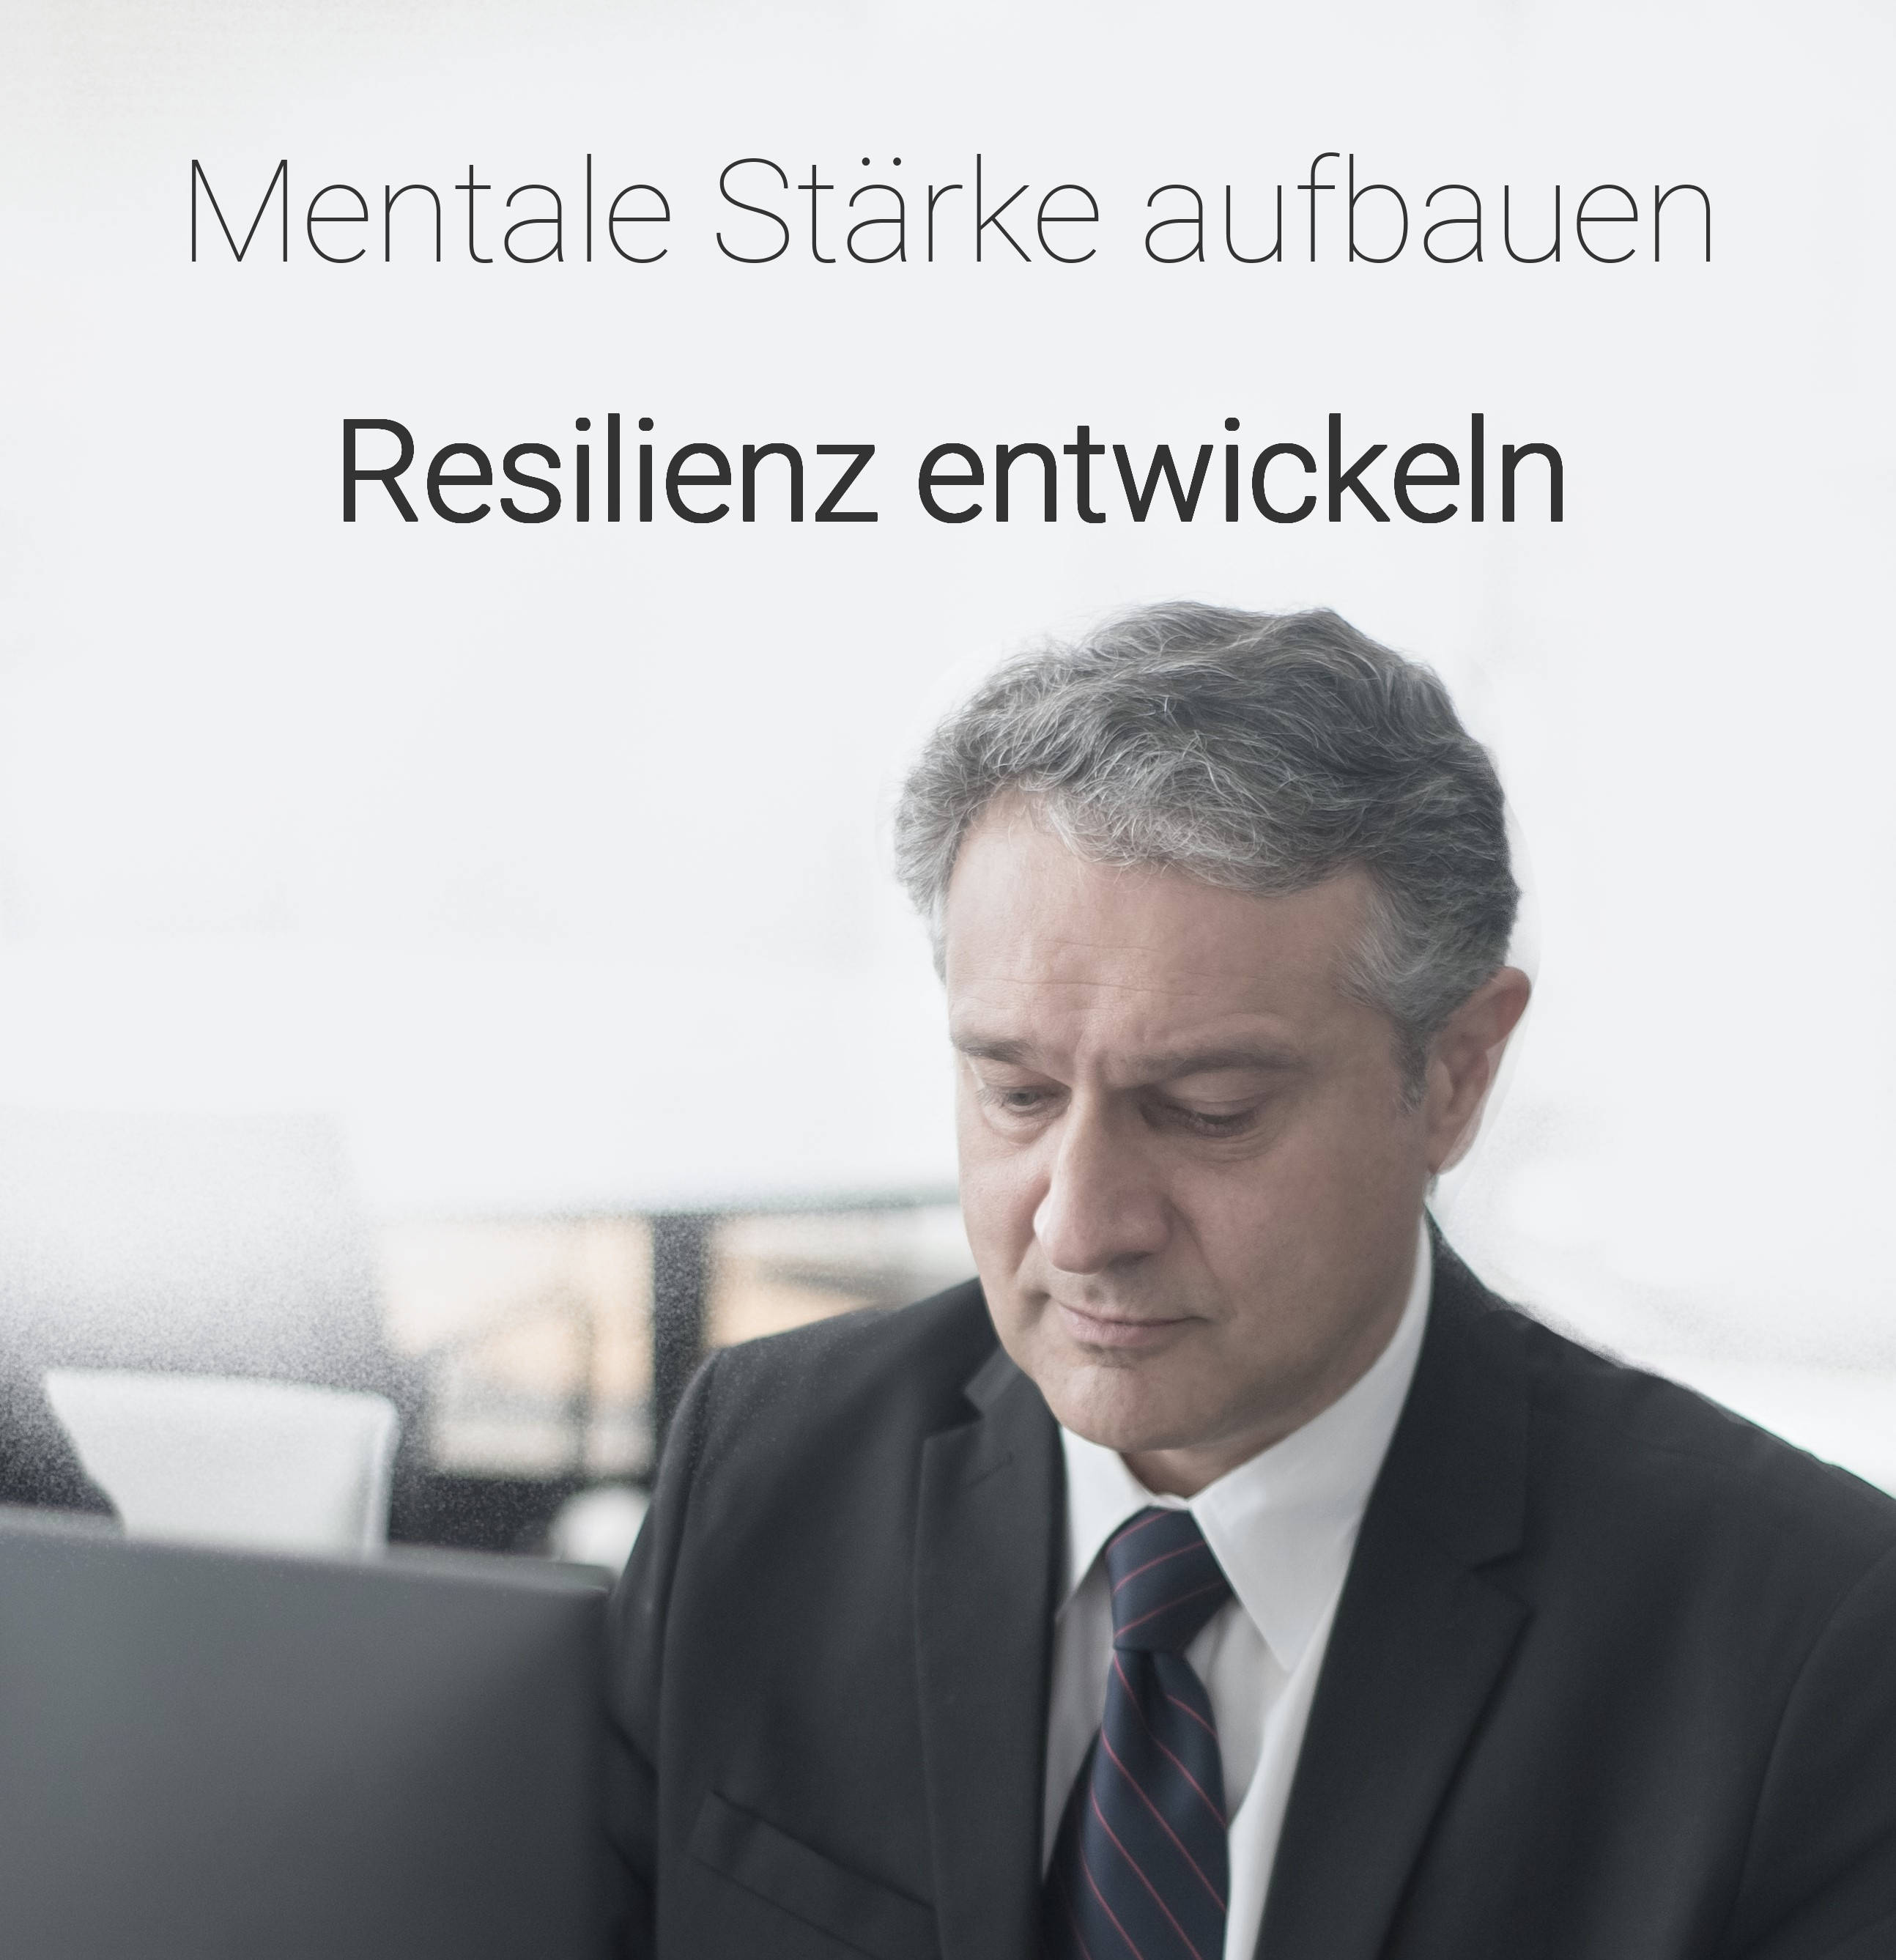 Mit gezieltem Resilienztraining die mentale Stärke stärken und erfolgreich Stressbewältigung meistern. Resilienz im Berufsalltag: Effektive Strategien und Resilienzstrategien zur Entwicklung und Stärkung der eigenen Resilienz.